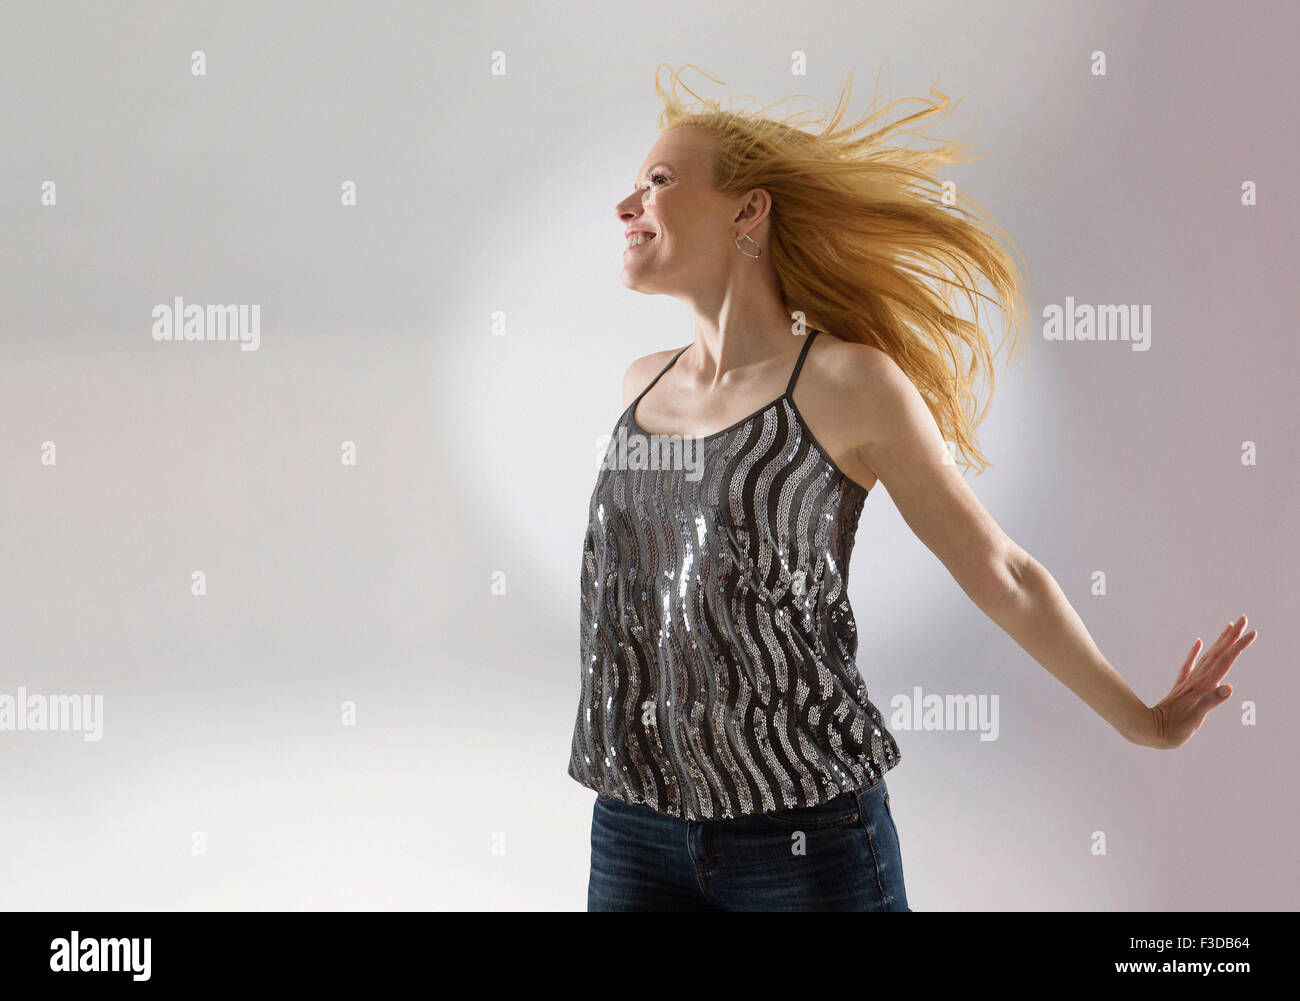 Happy woman dancing in studio Stock Photo